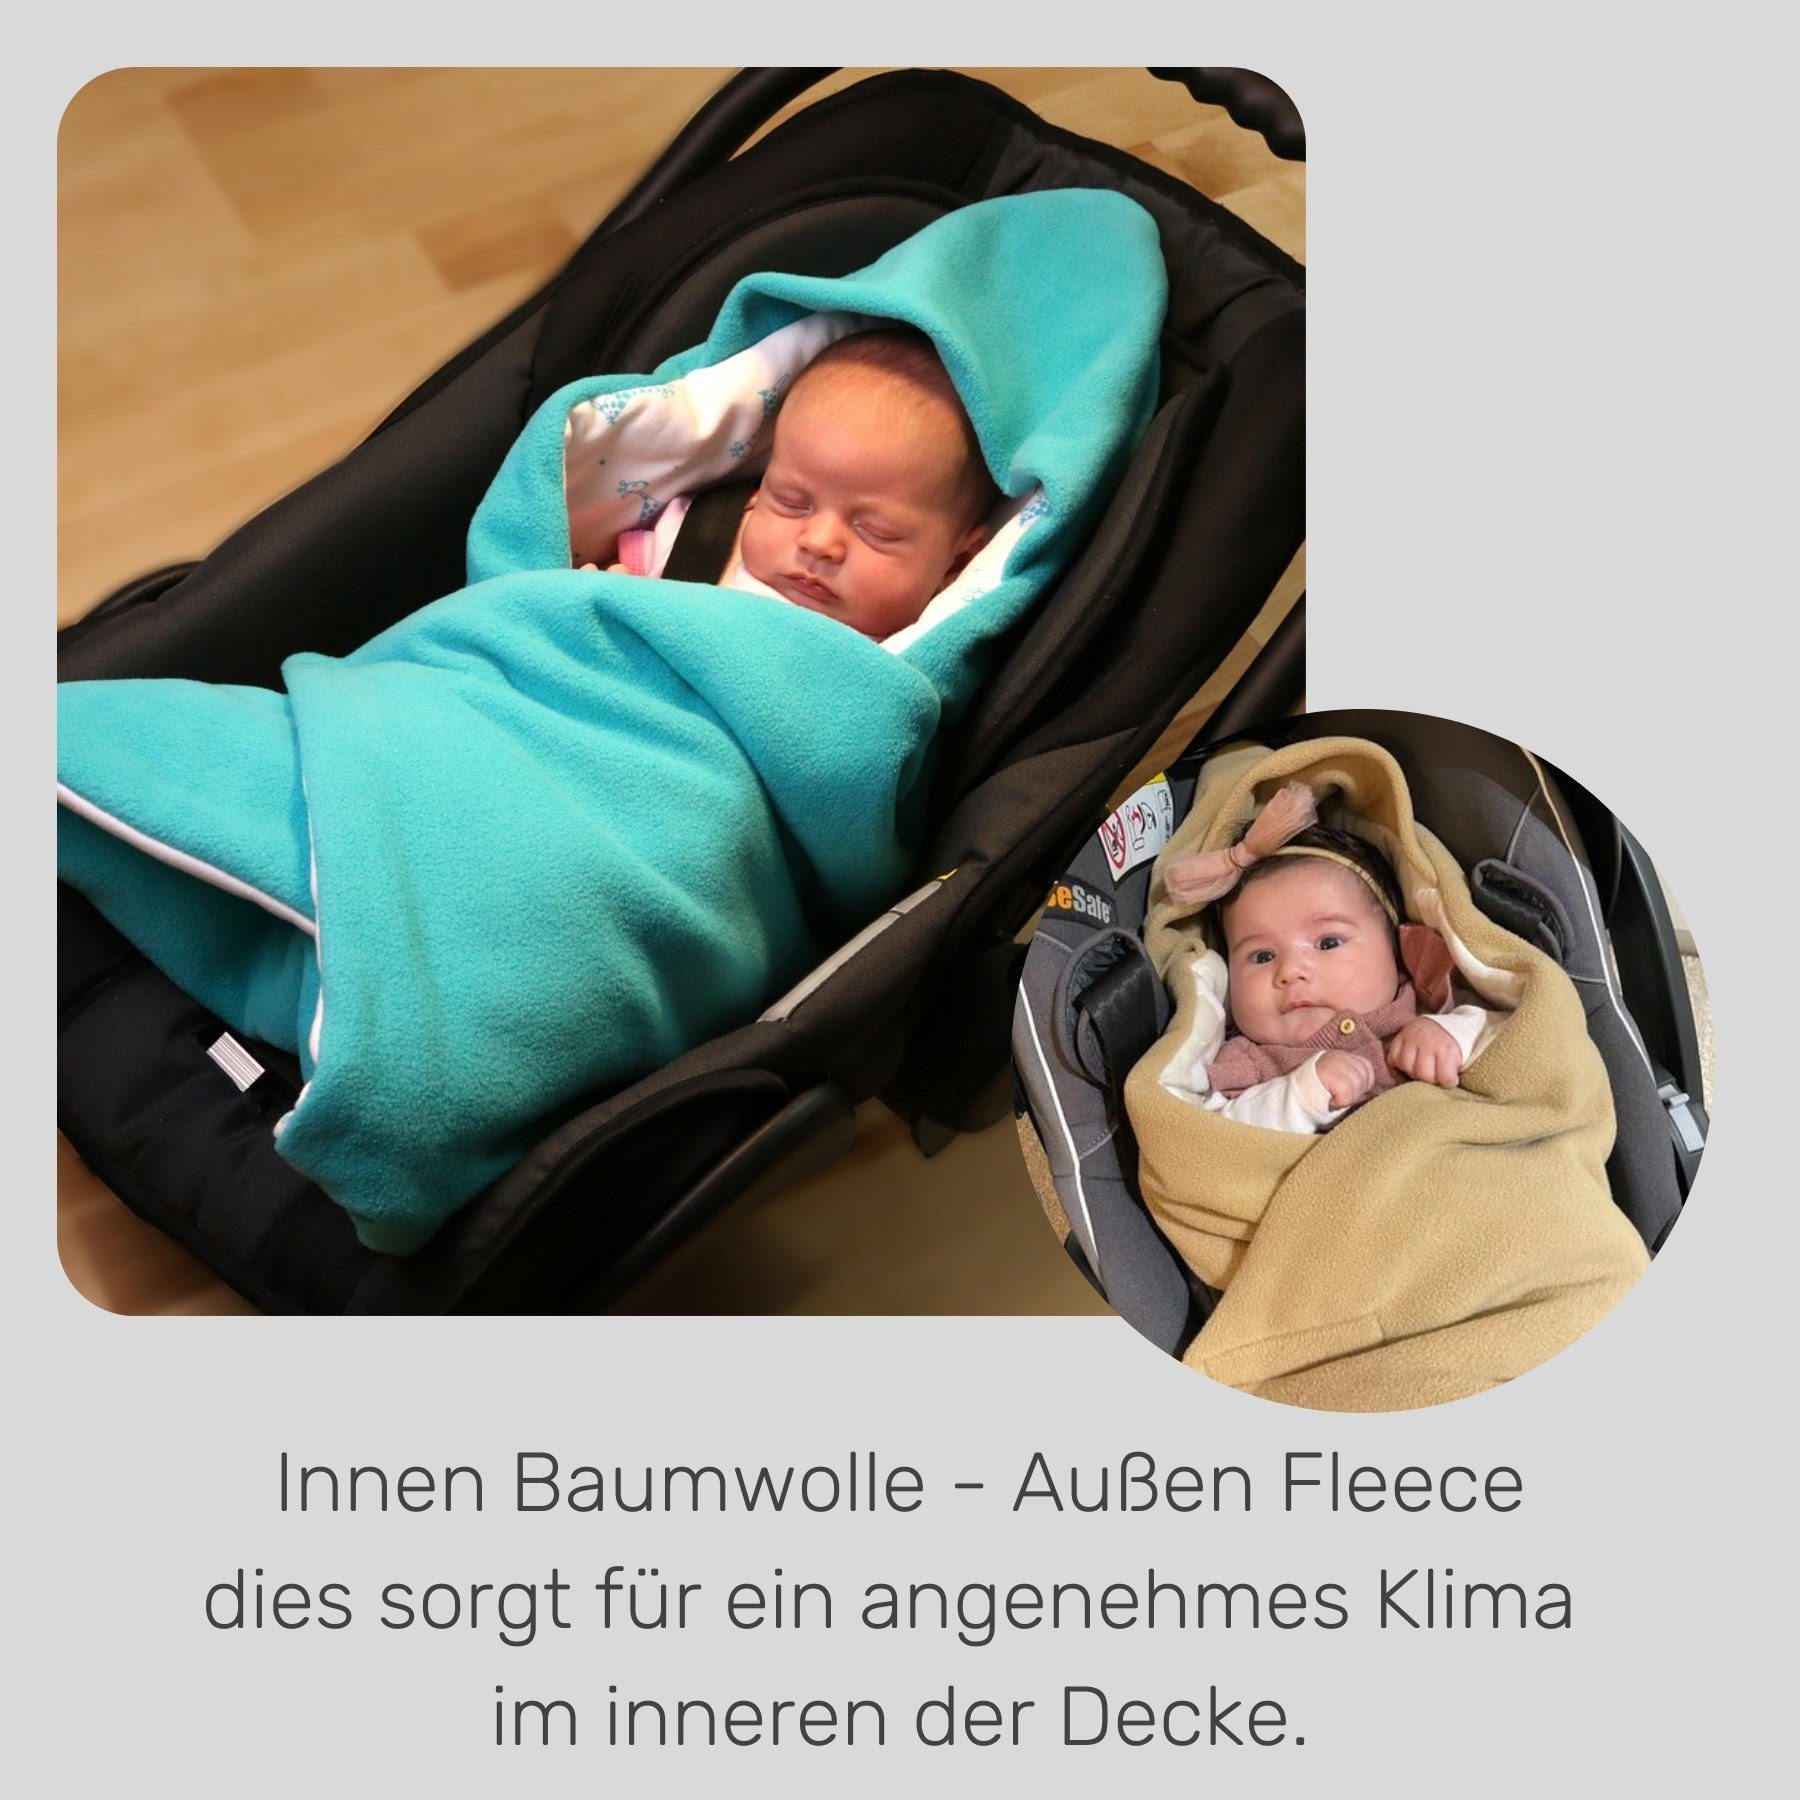 Einschlagdecke Fußsack für geeignet Babyschale für Winter, Babyschalenfußsack Punkt die 3 weiß/Sterne Babyschale HOBEA-Germany